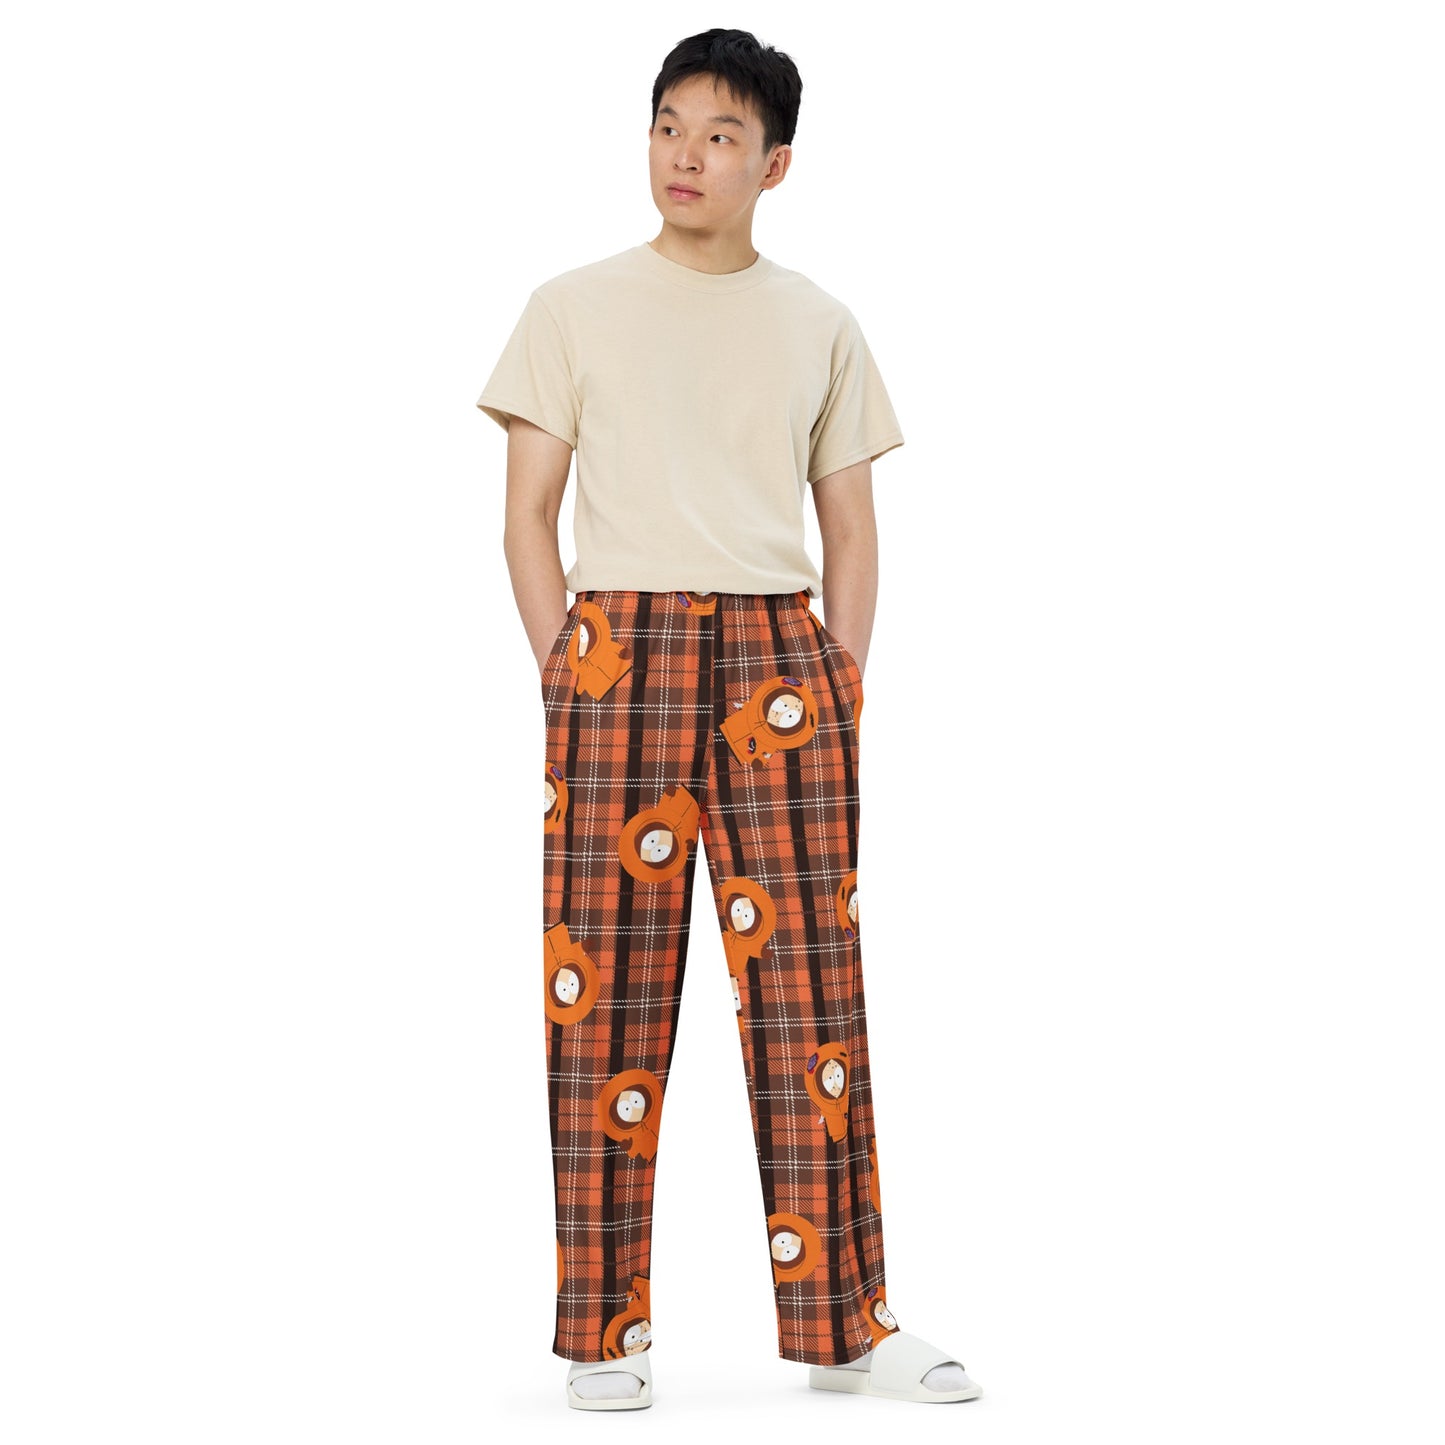 South Park Pijama Kenny Plaid Pantalones